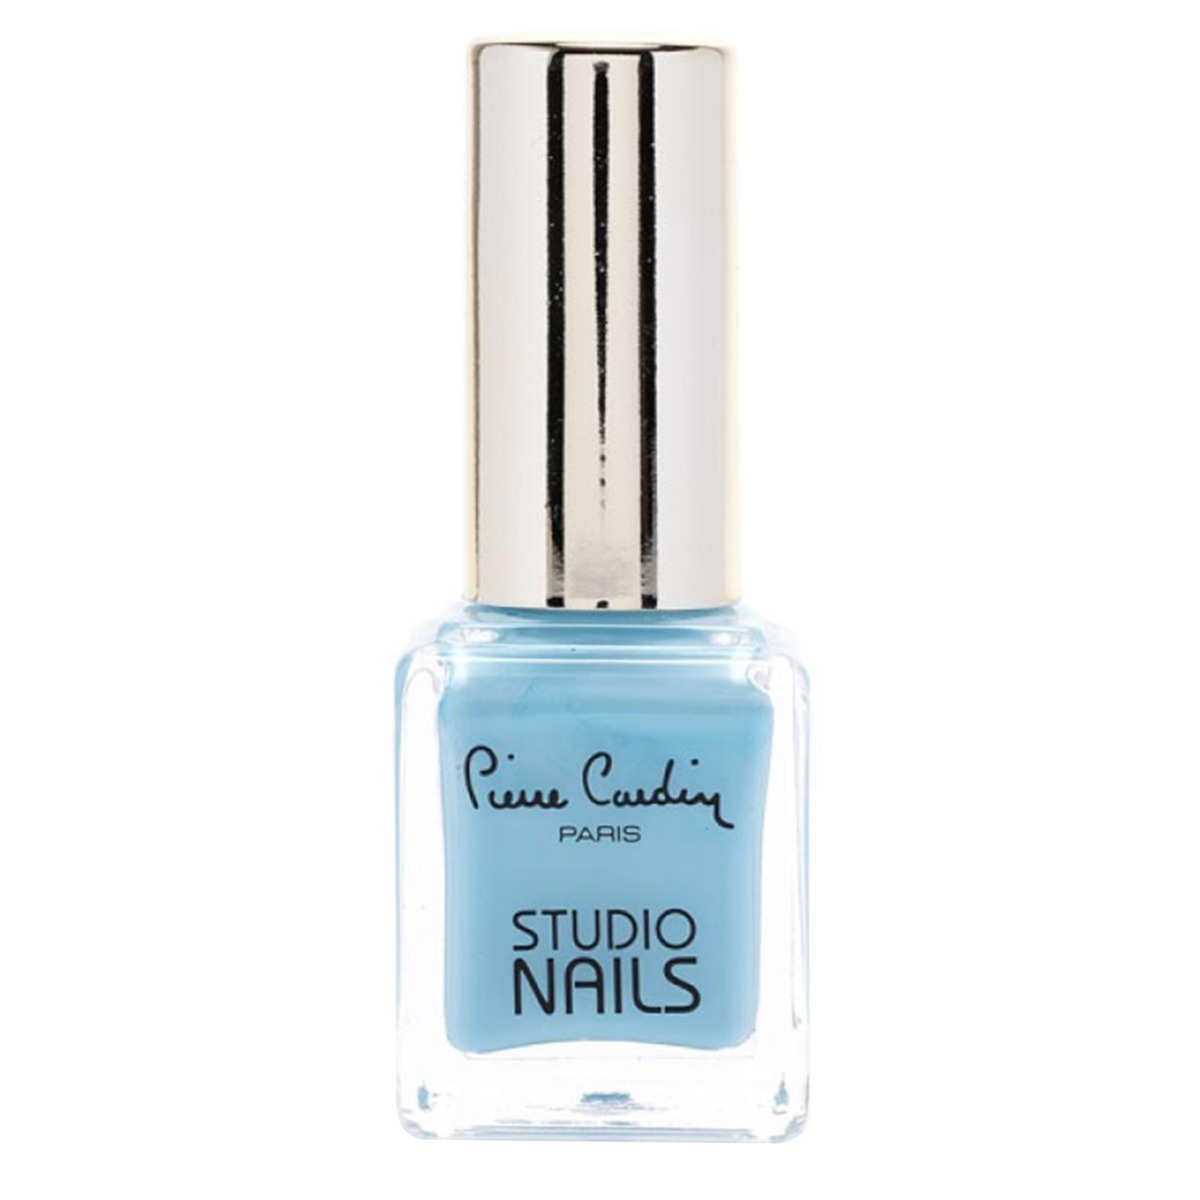 Pierre Cardin Paris - Studio Nails, 11.5ml-77 - Baby Blue